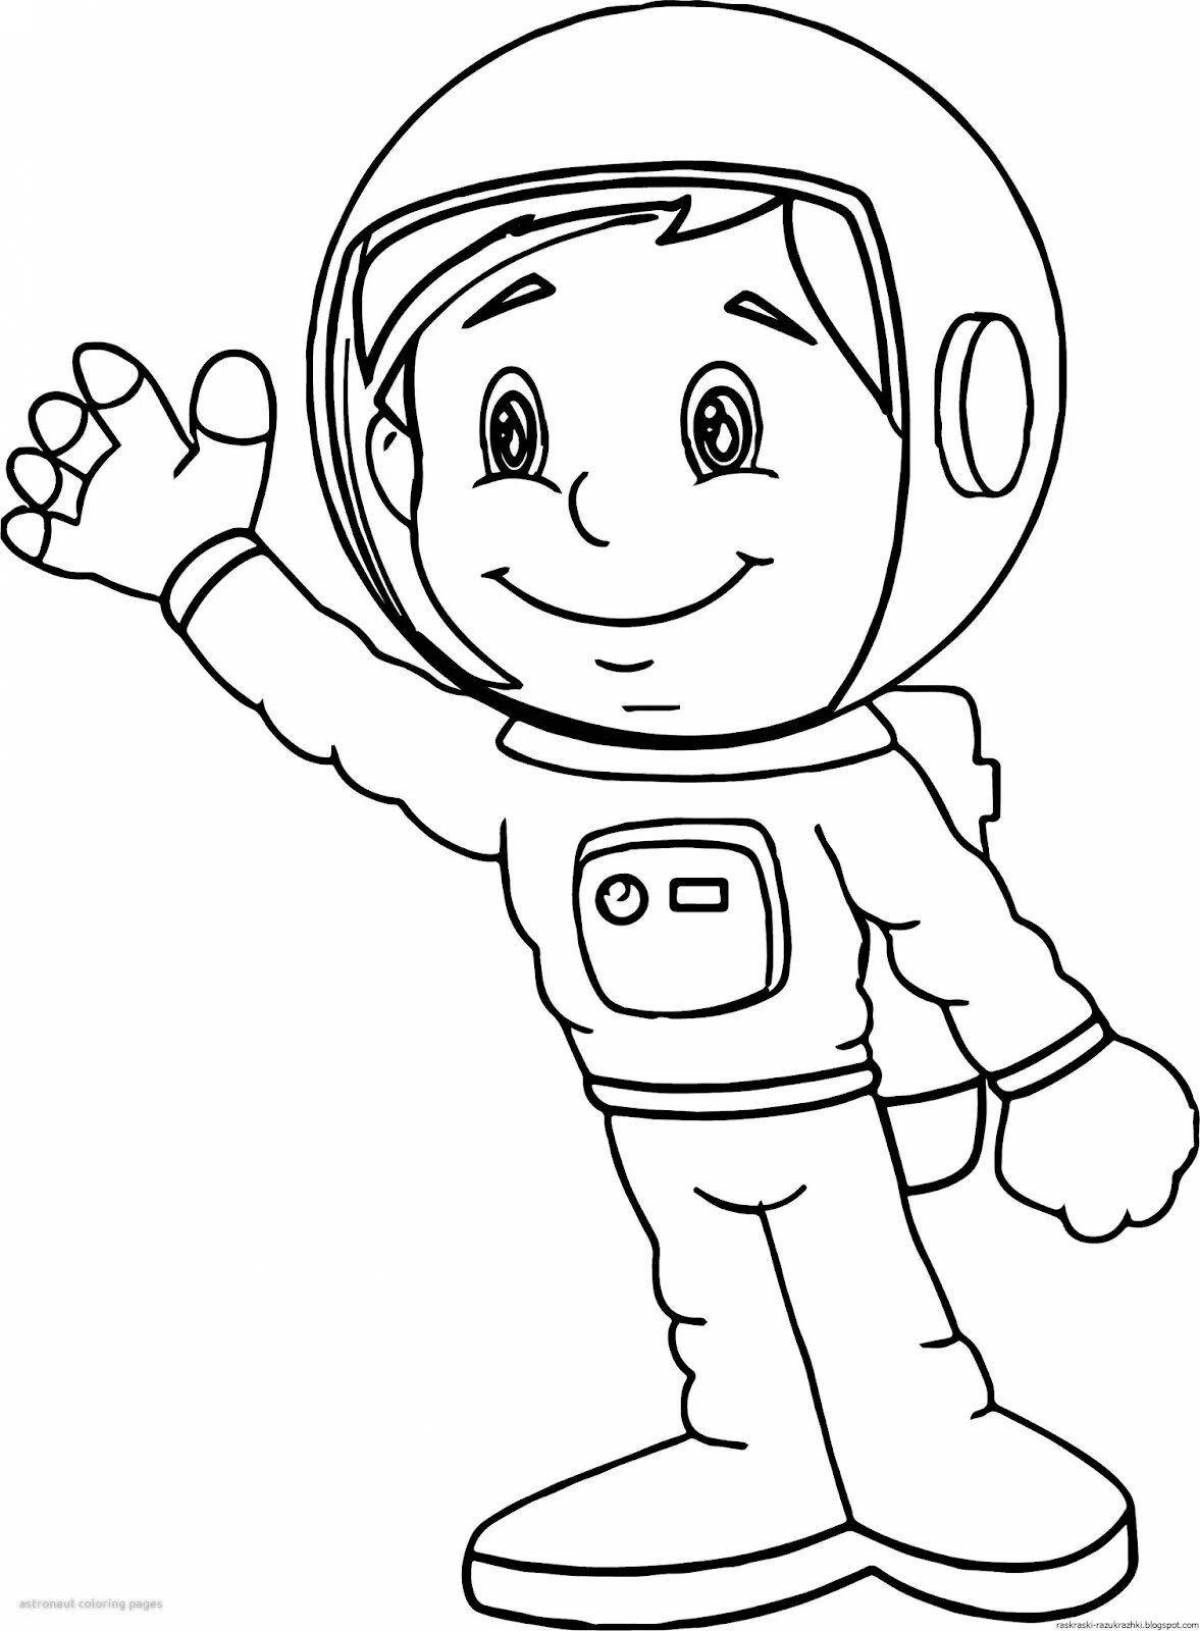 Креативная раскраска космонавта для детей